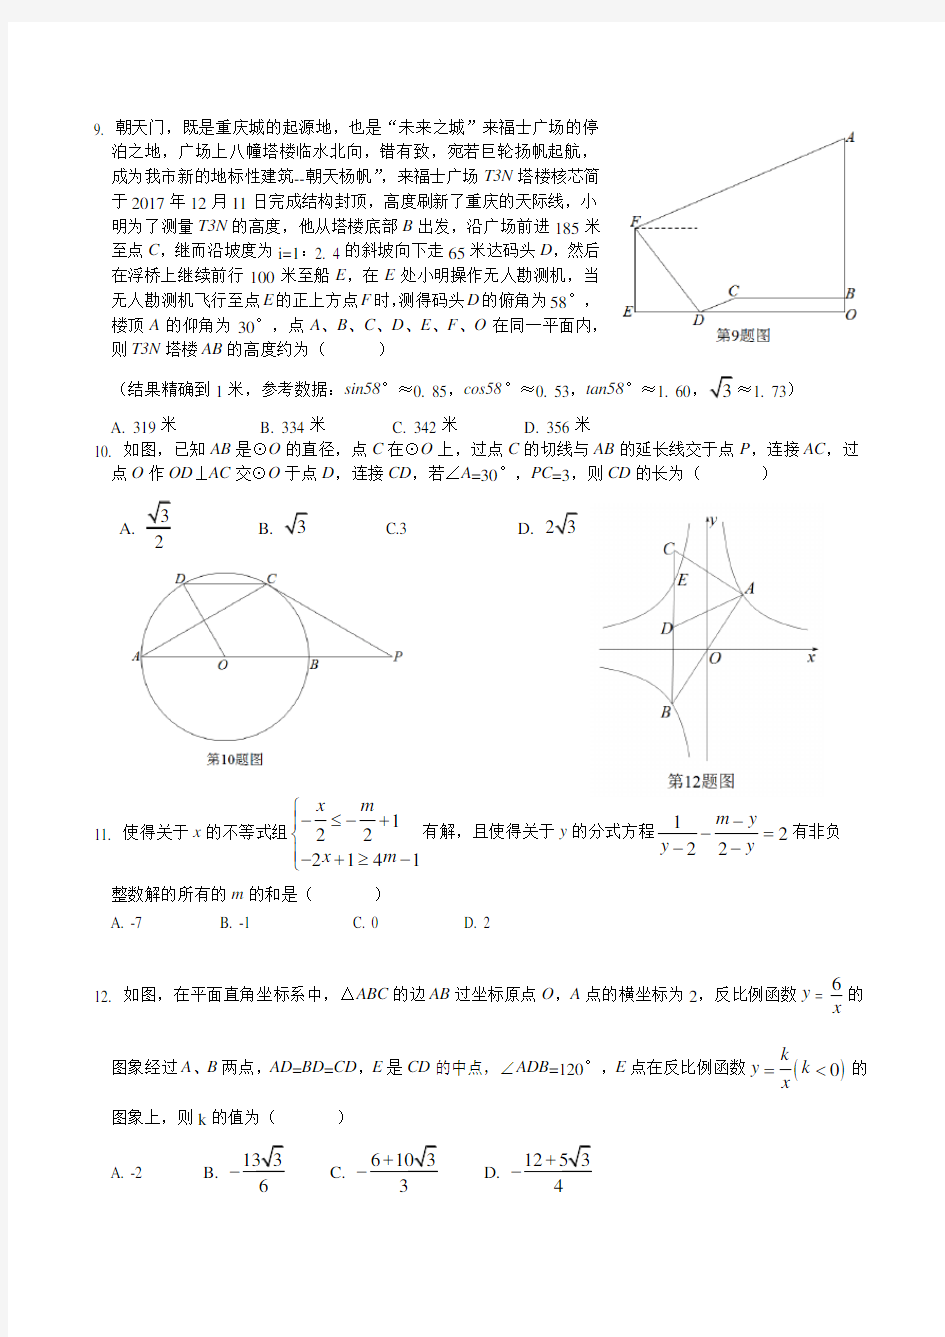 重庆育才中学初2018级初三(下)数学第三次诊断性考试